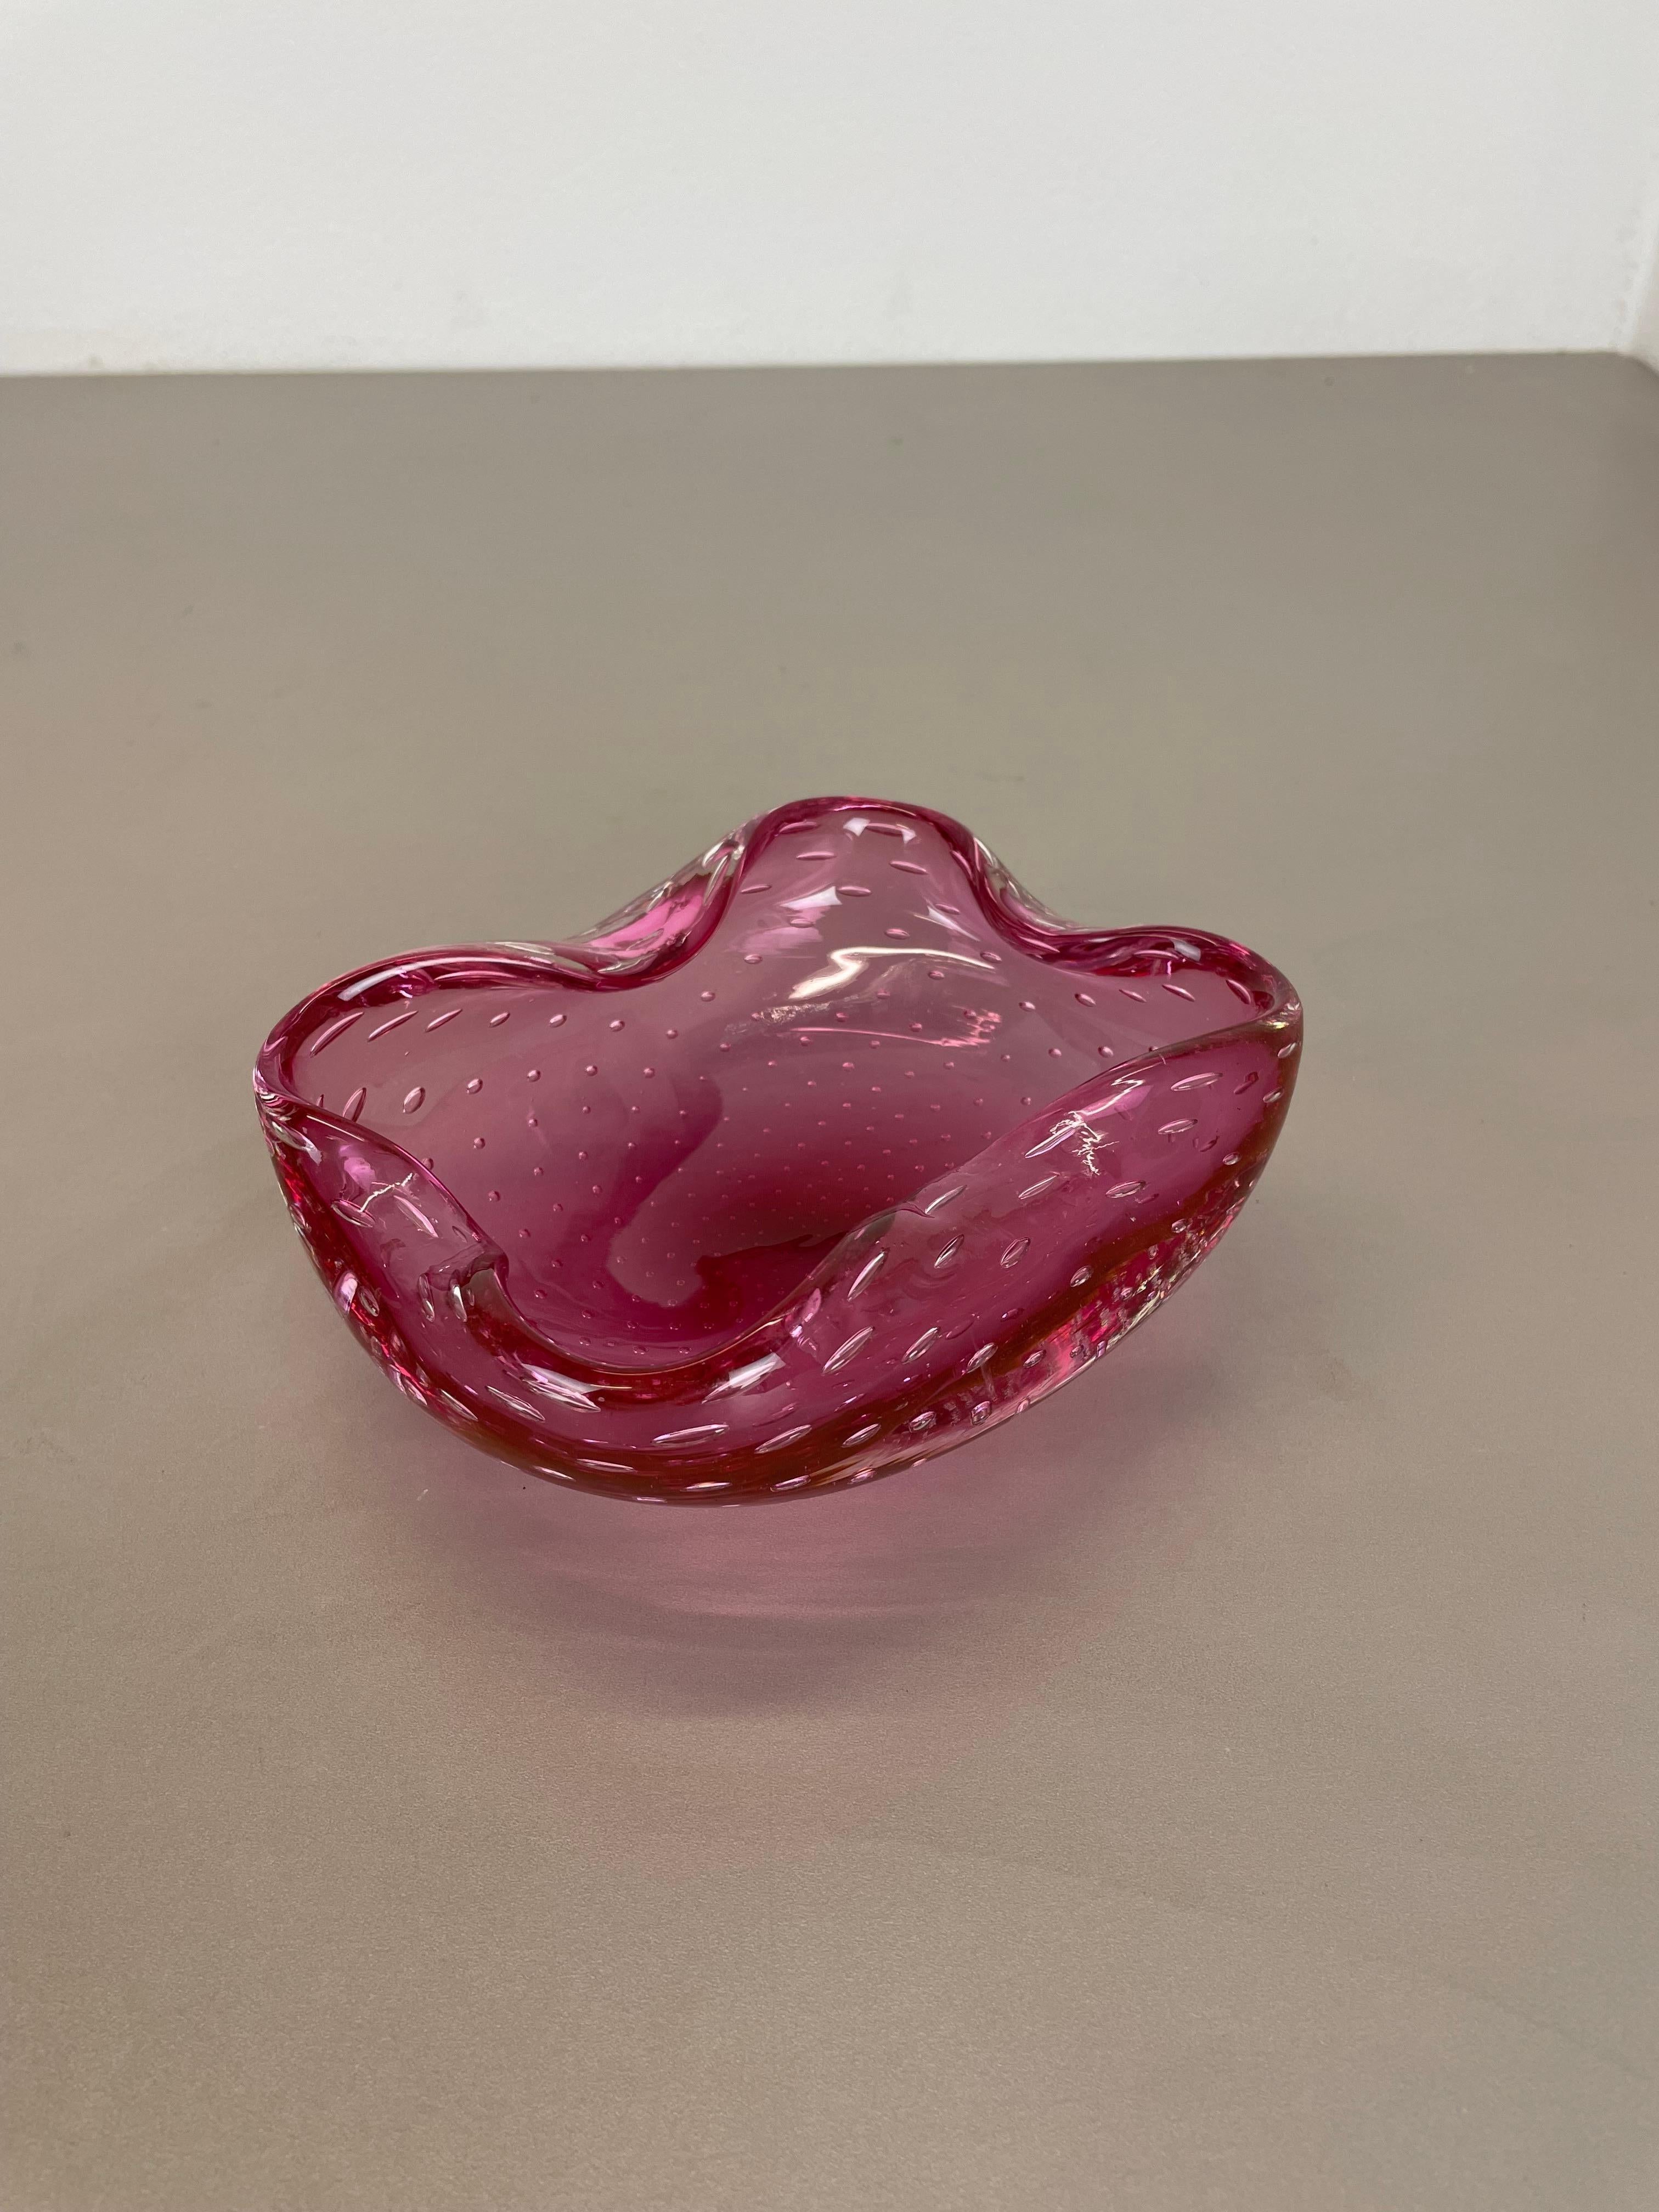 Artikel:

xl Murano-Glasschale, Aschenbecher-Element


Herkunft:

Murano, Italien


Jahrzehnt:

1970s


Diese originelle Muschelschale aus Glas wurde in den 1970er Jahren in Murano, Italien, hergestellt. Ein elegantes lila-rosafarbenes